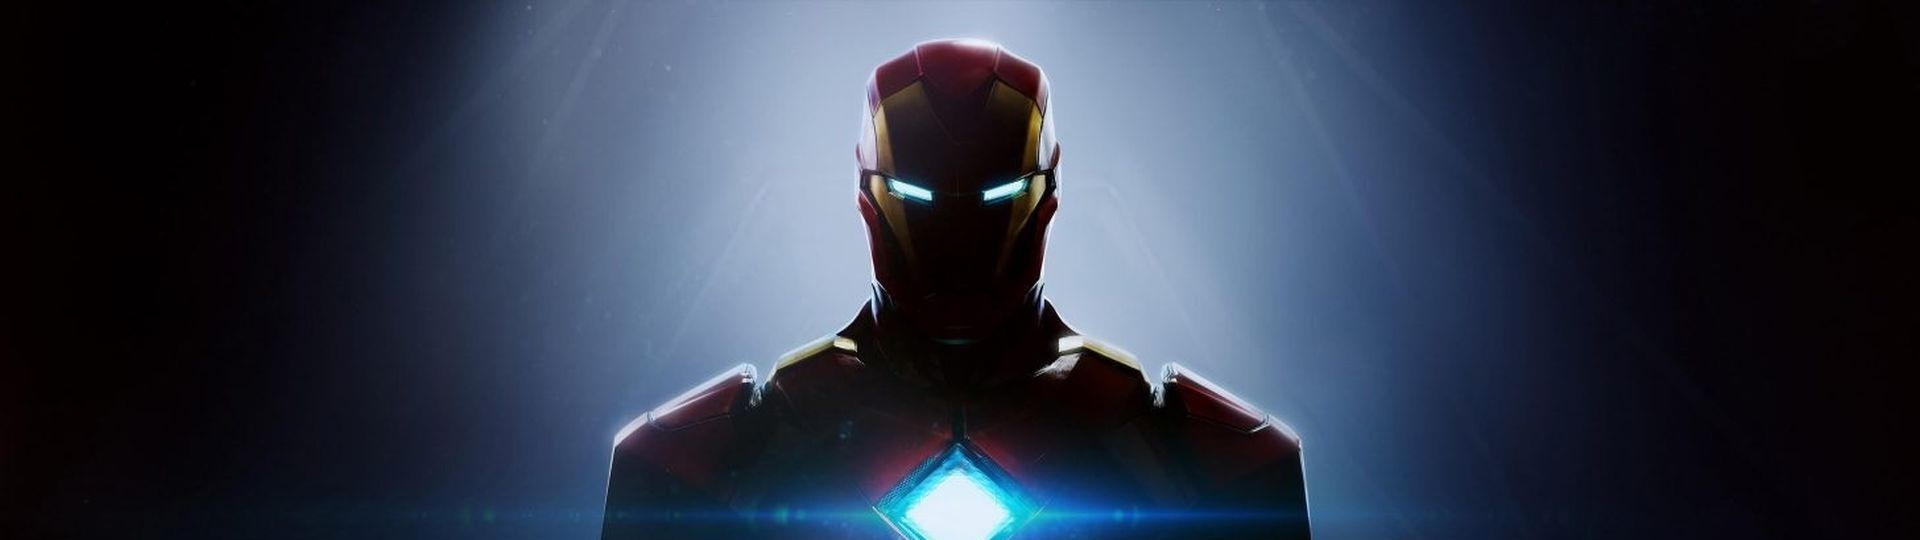 EA oficiálně potvrzuje zahájení prací na hře Iron Man | Novinky